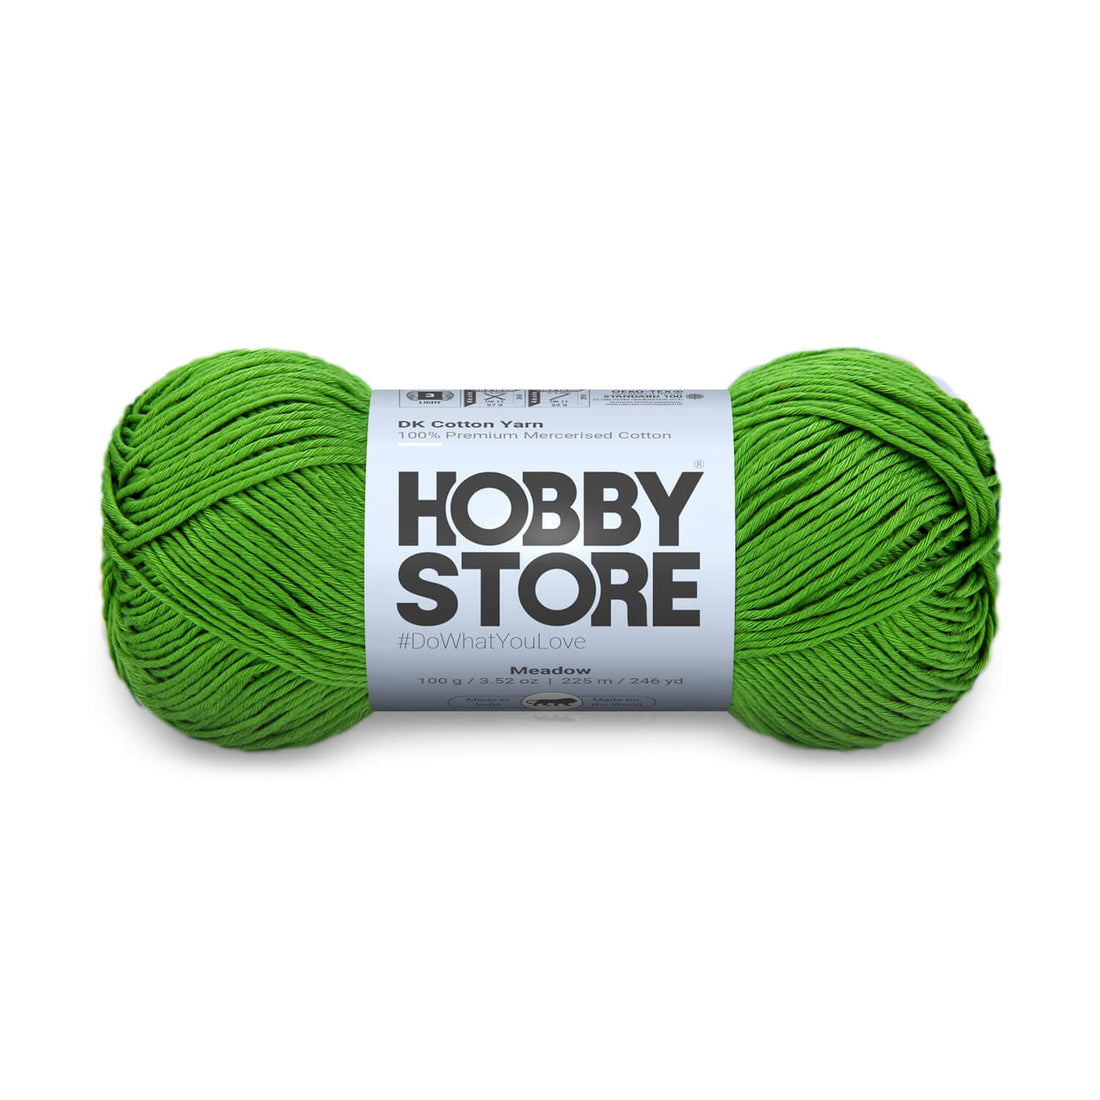 DK Mercerised Cotton Yarn by Hobby Store - Meadow - 330